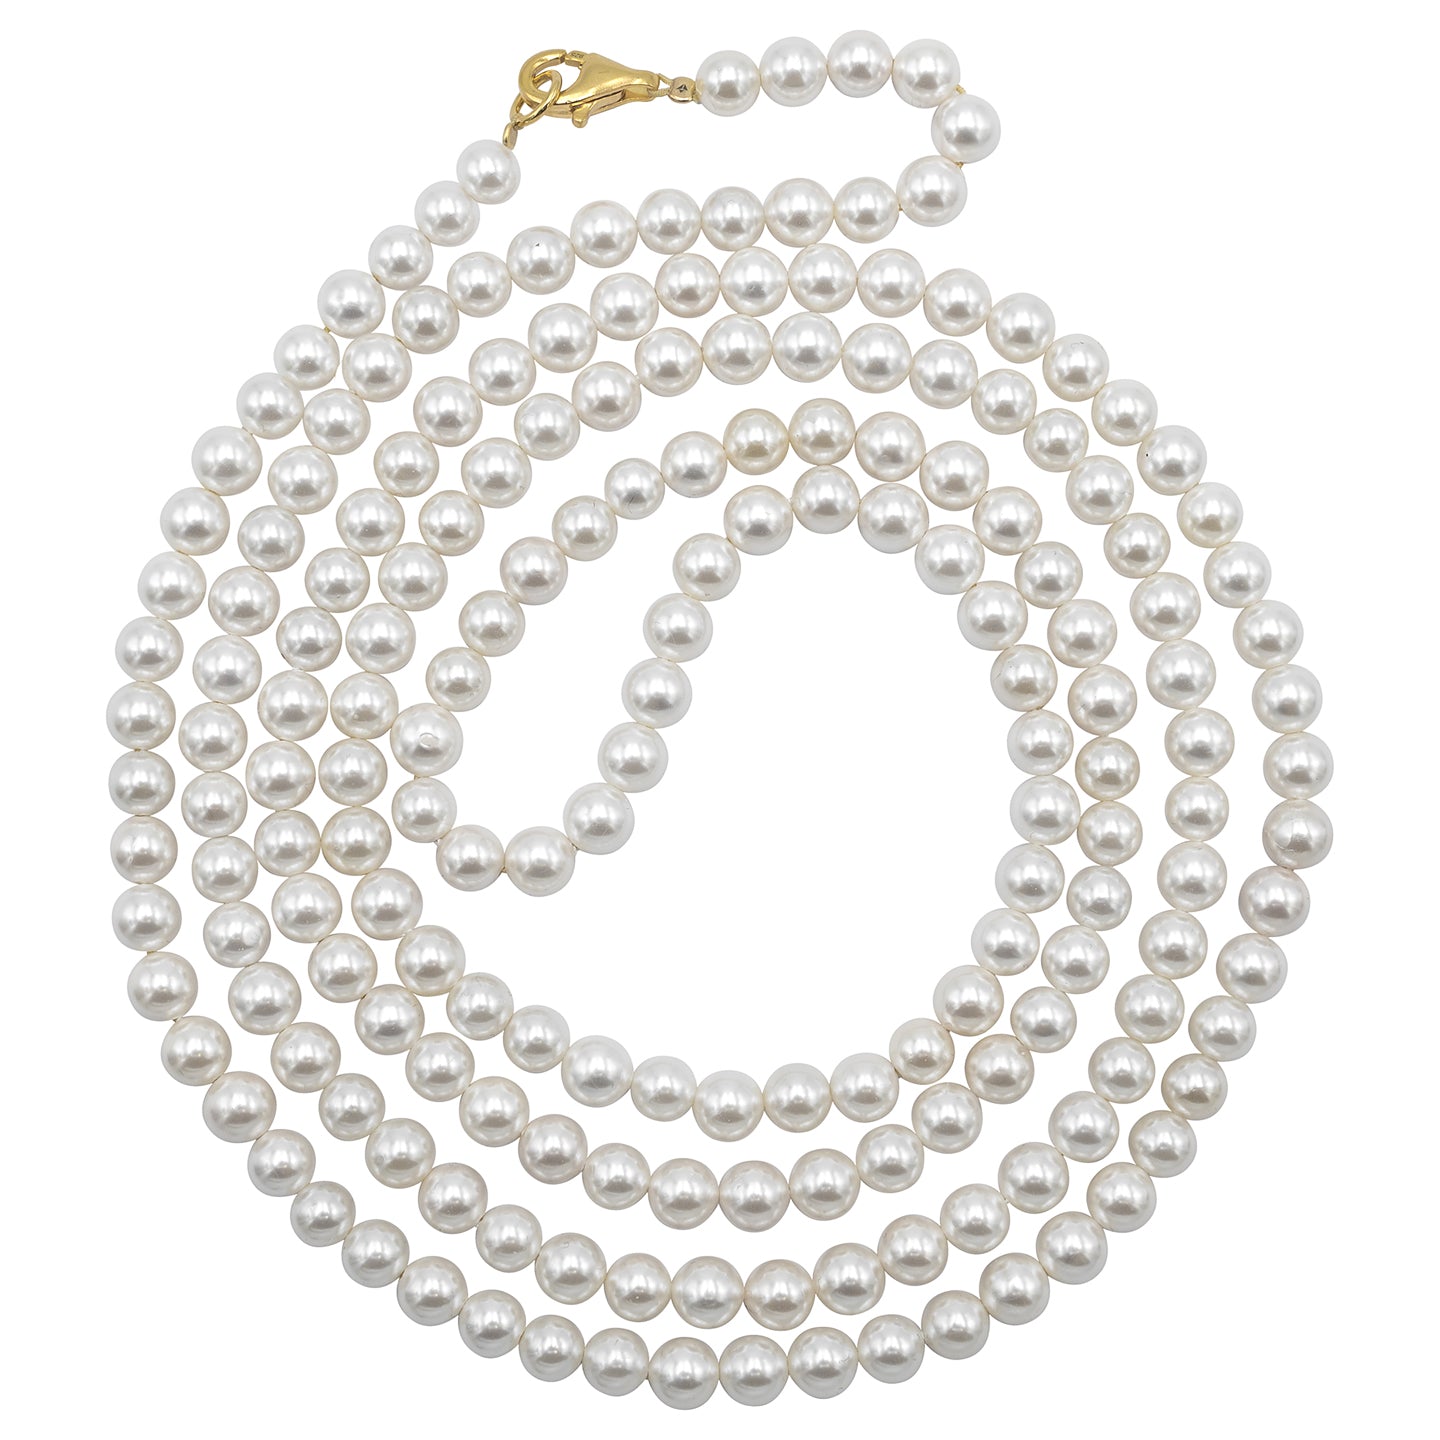 Colier lung perle scoica si argint Mermaid Pearls - placat aur galben 18K